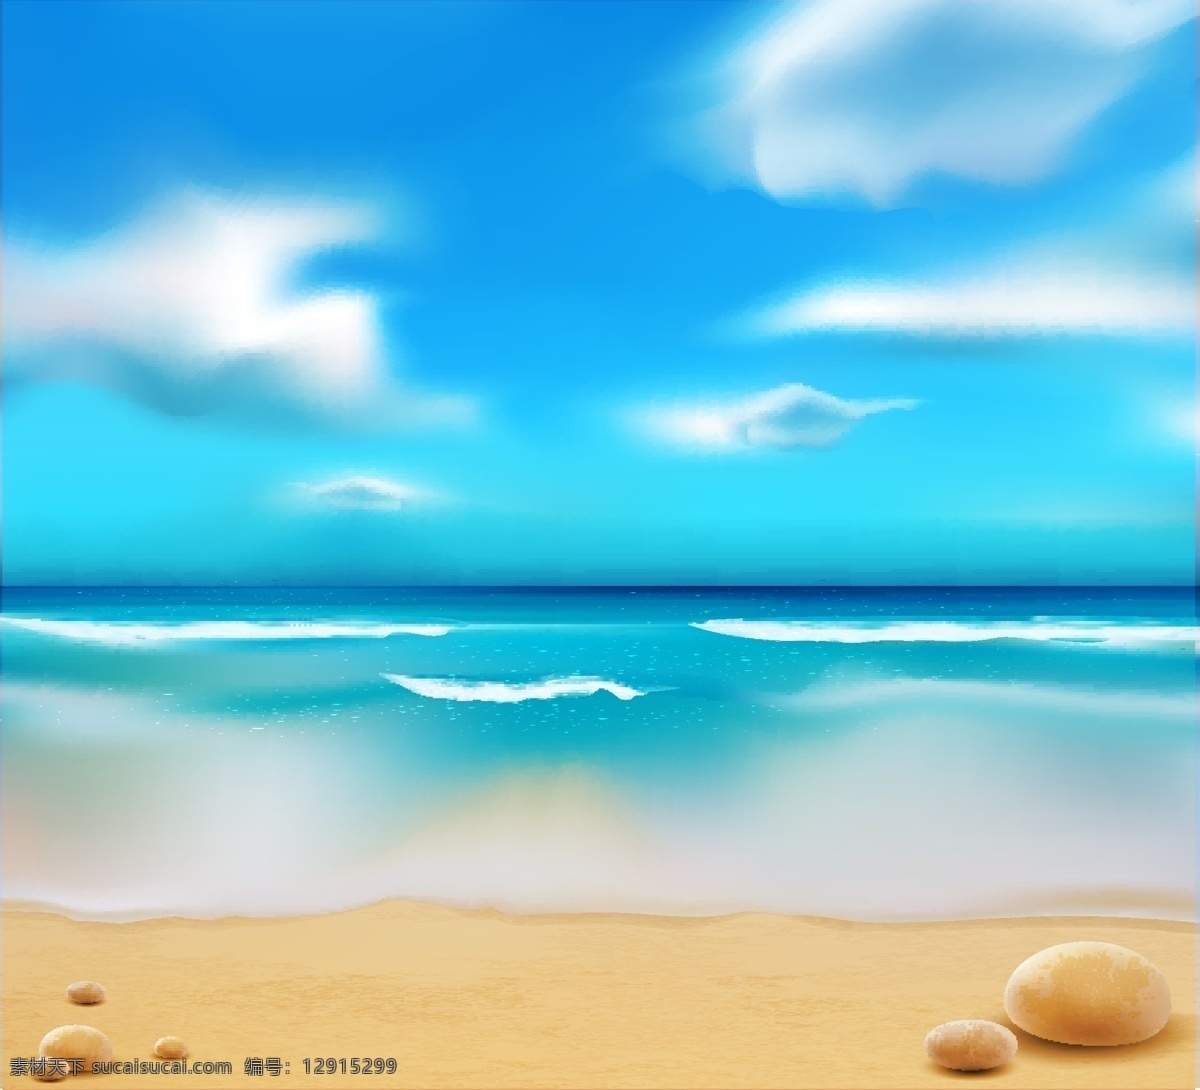 海滩风景插画 沙滩风景 海滩 风景插画 沙滩背景 自然风光 空间环境 矢量素材 白色